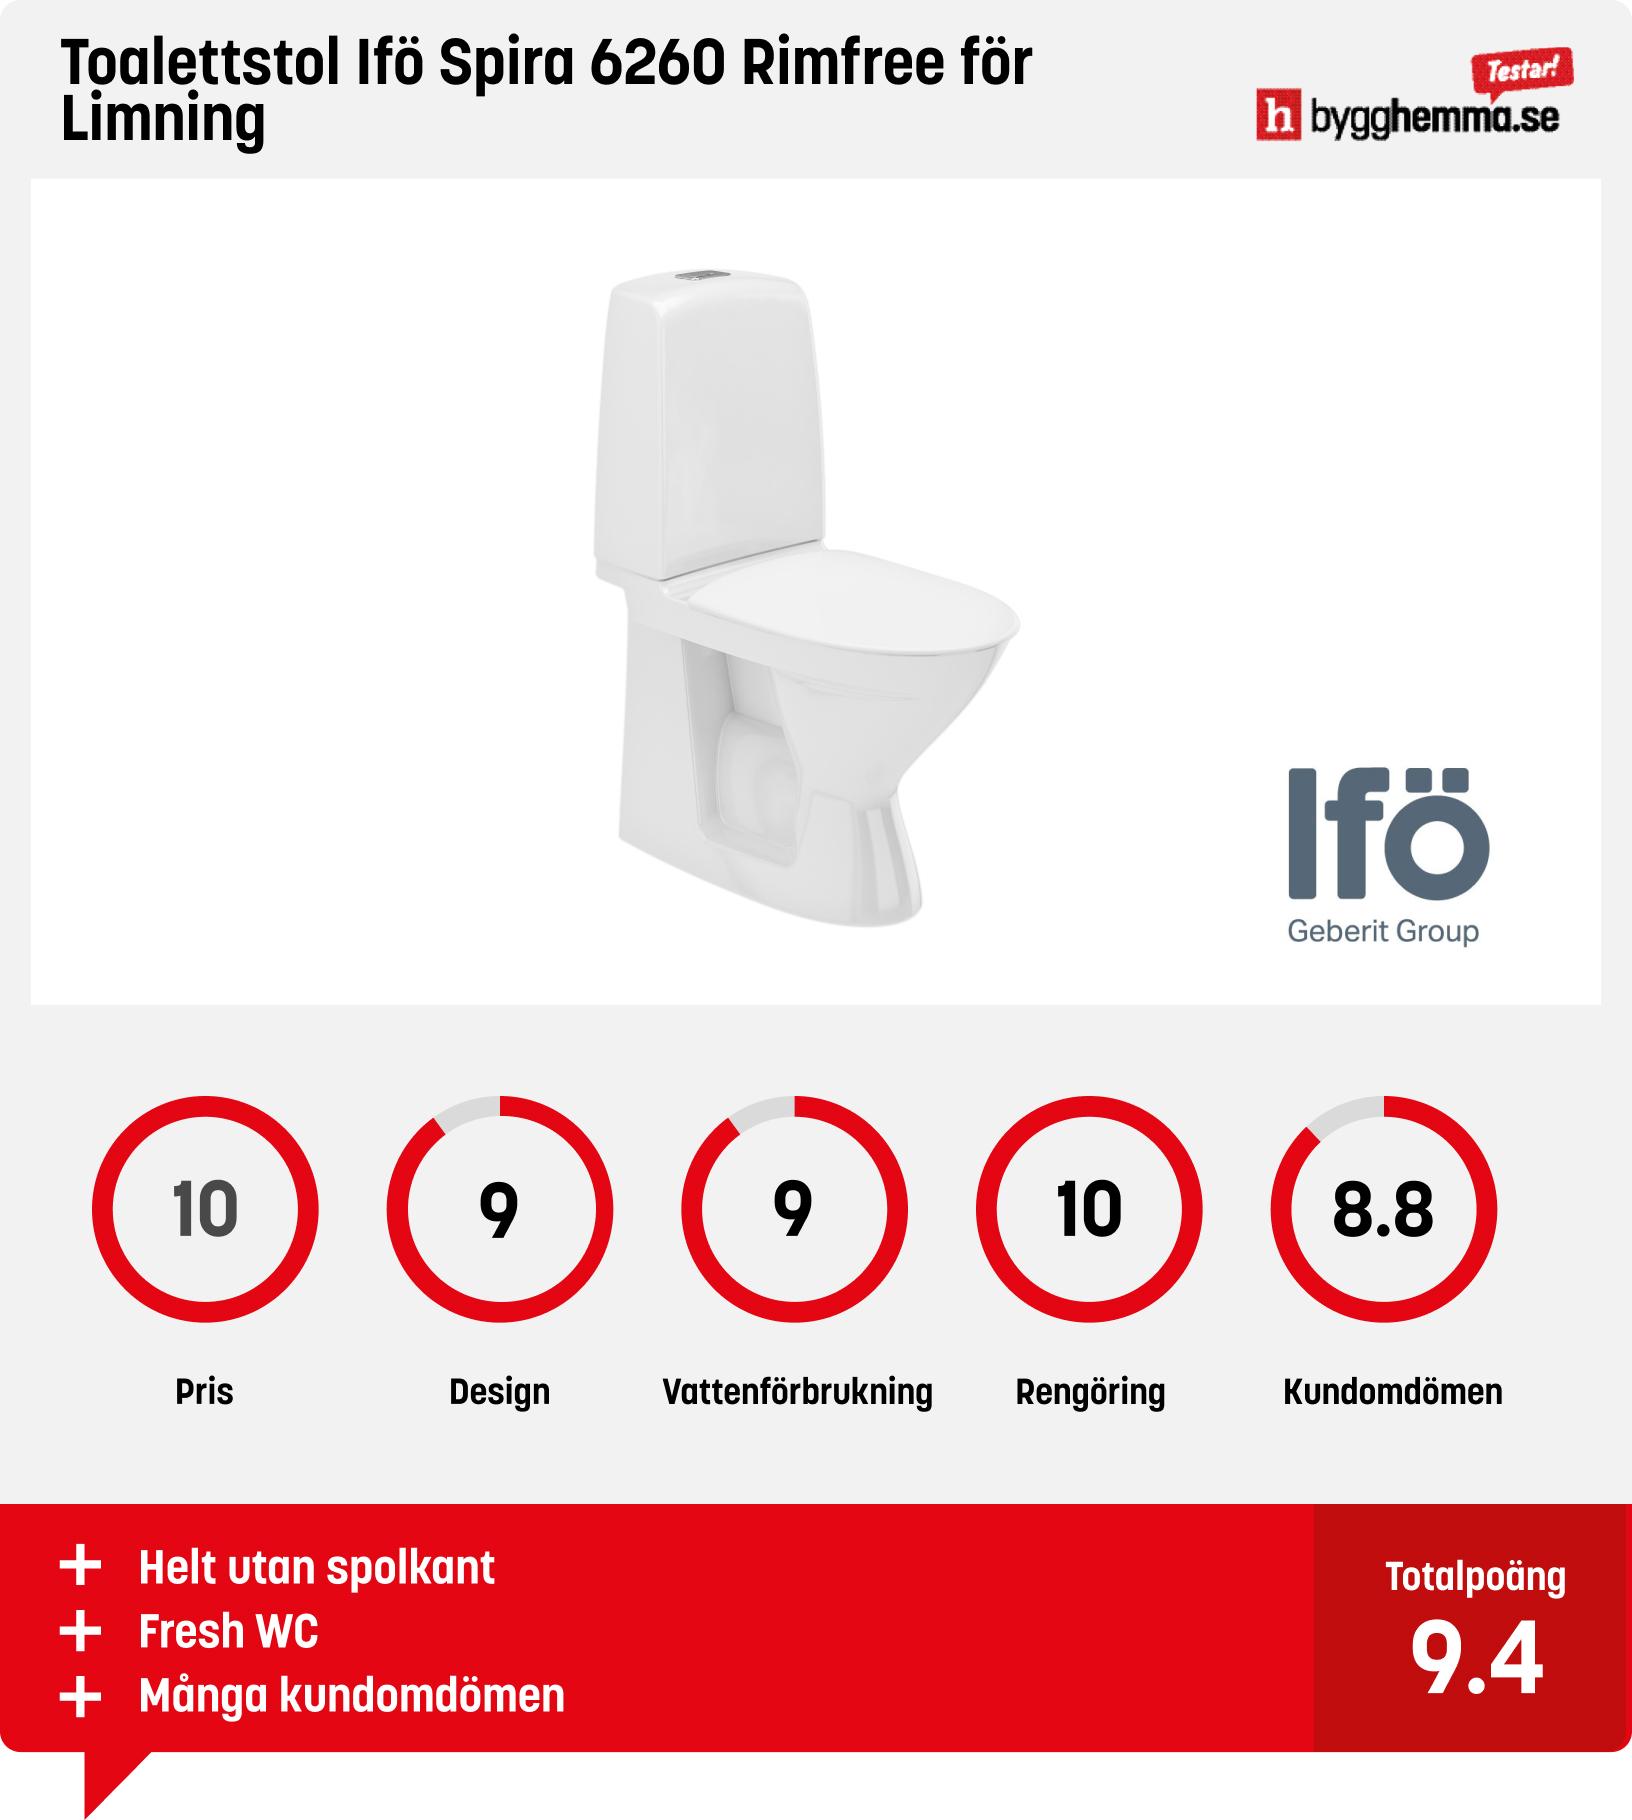 Toalettstol bäst i test - Toalettstol Ifö Spira 6260 Rimfree för Limning